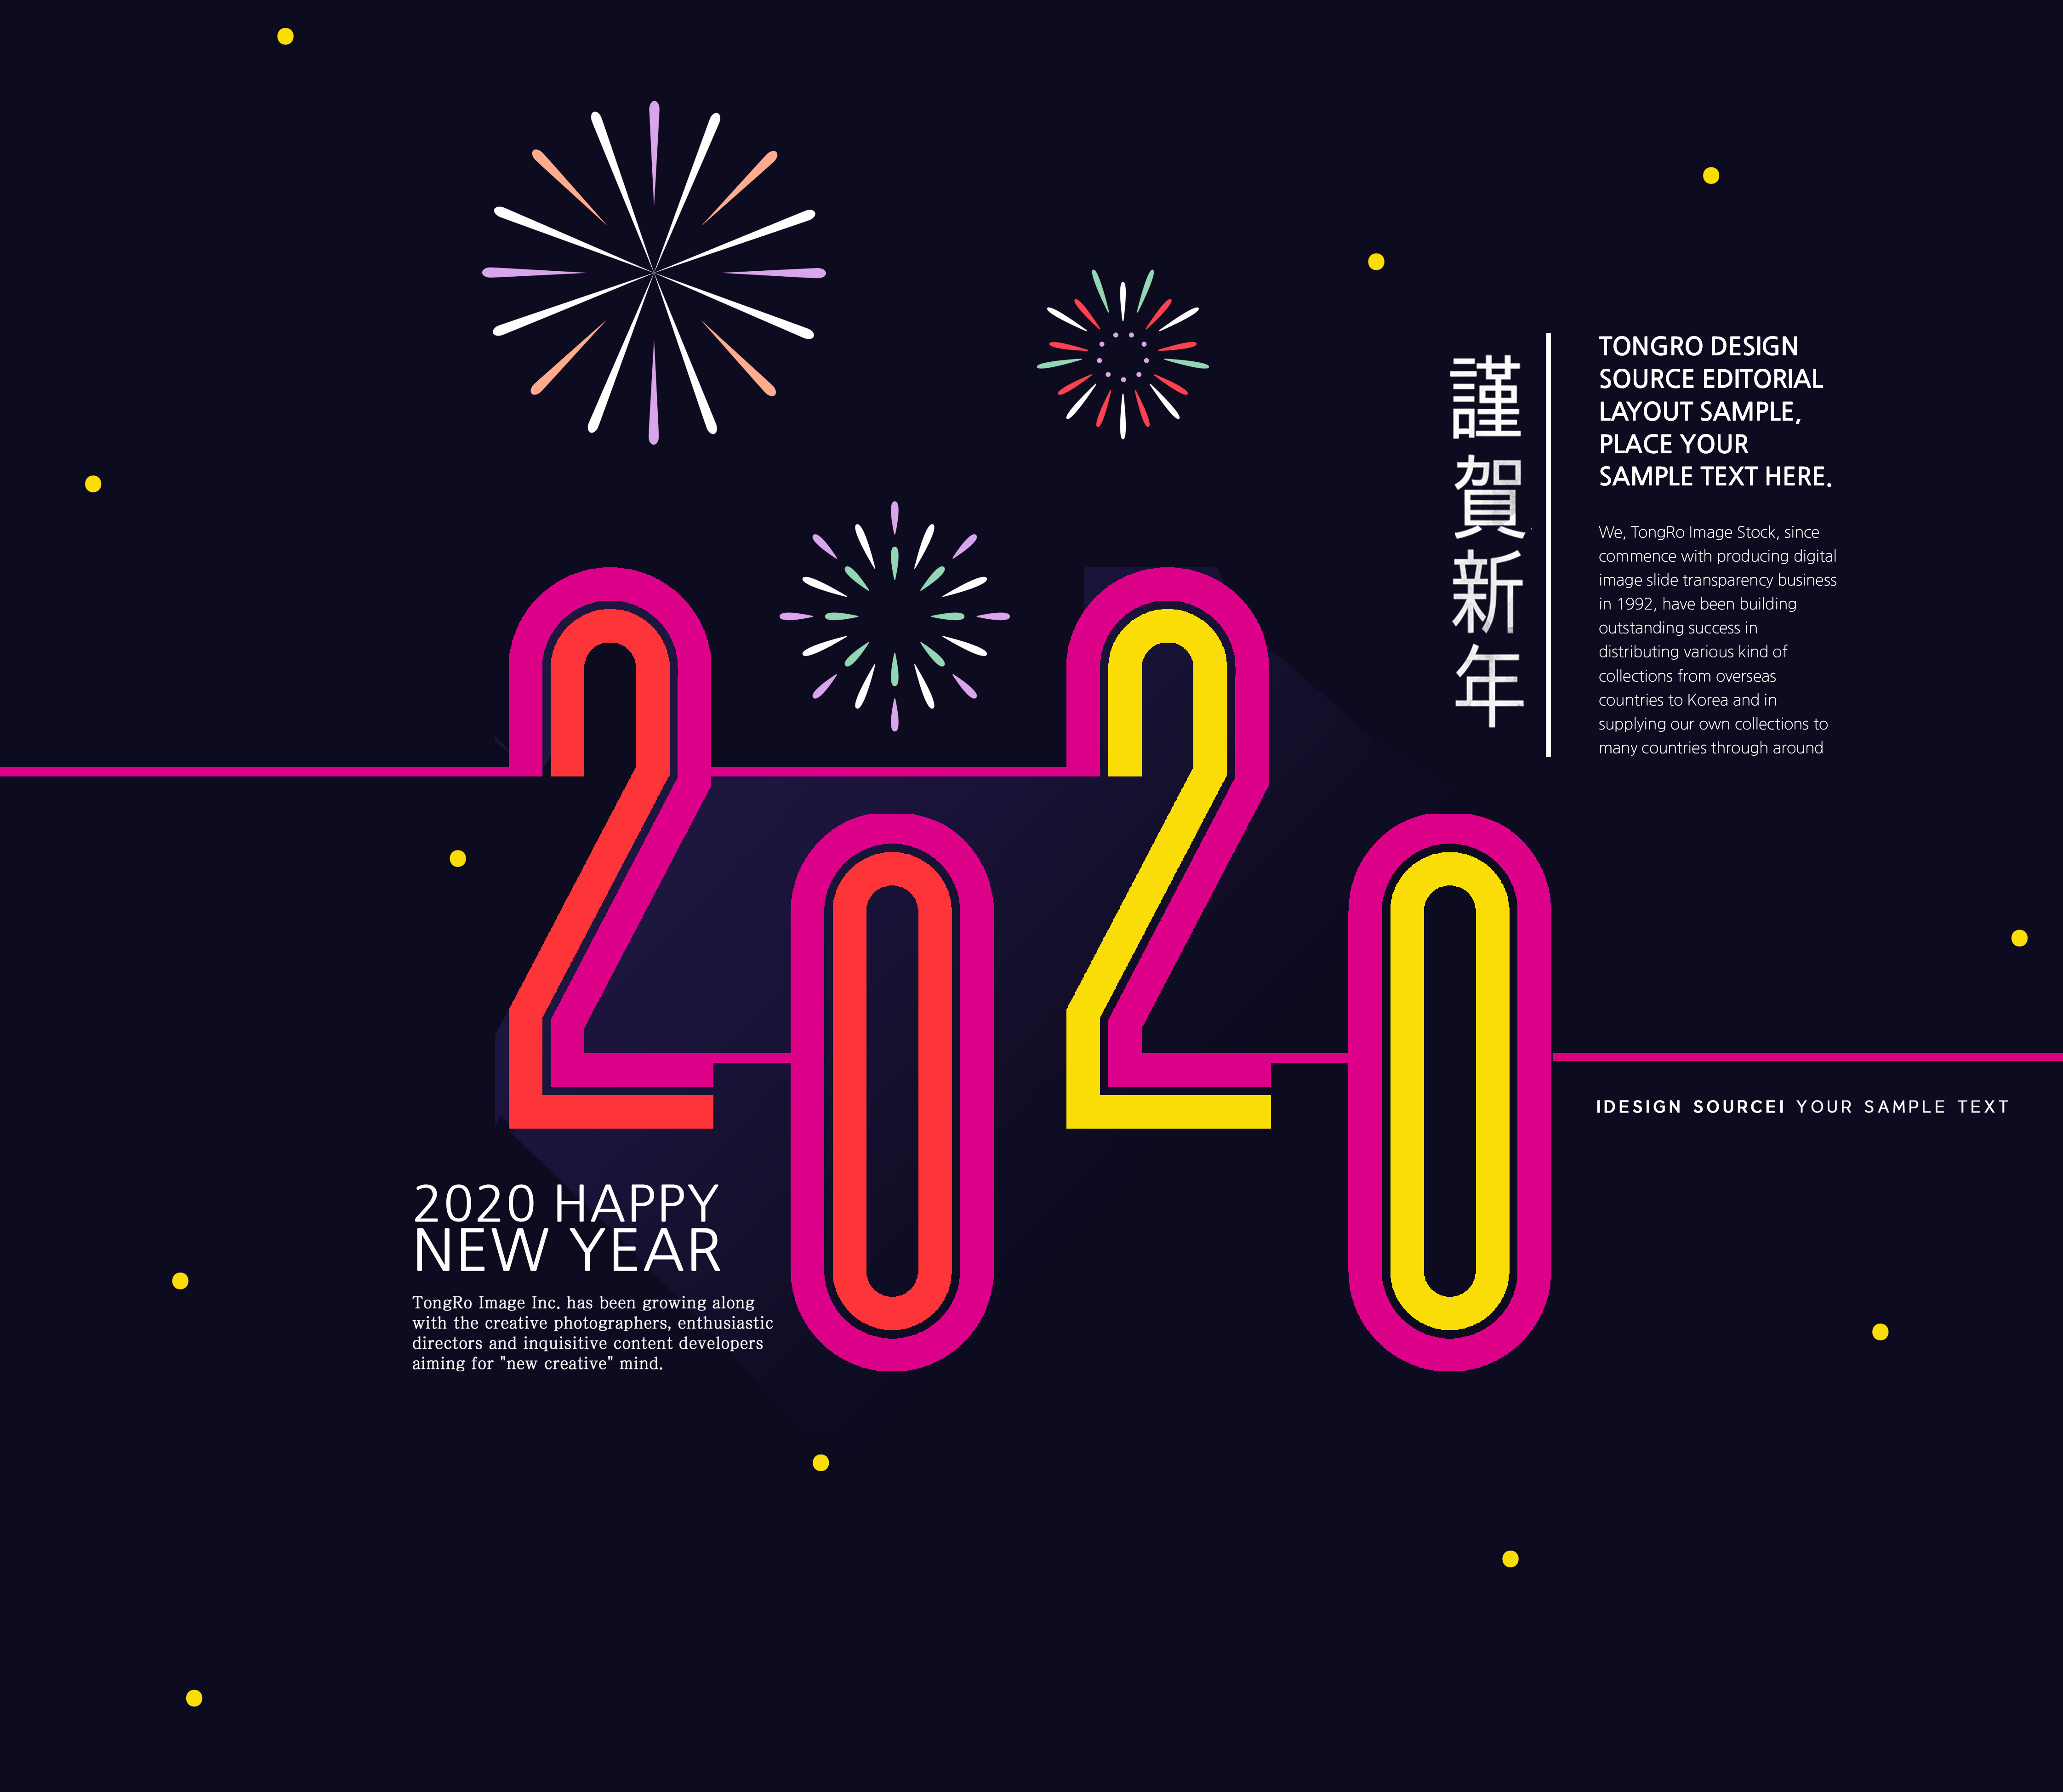 2020新年快乐主题海报模板合辑[PSD]插图(4)